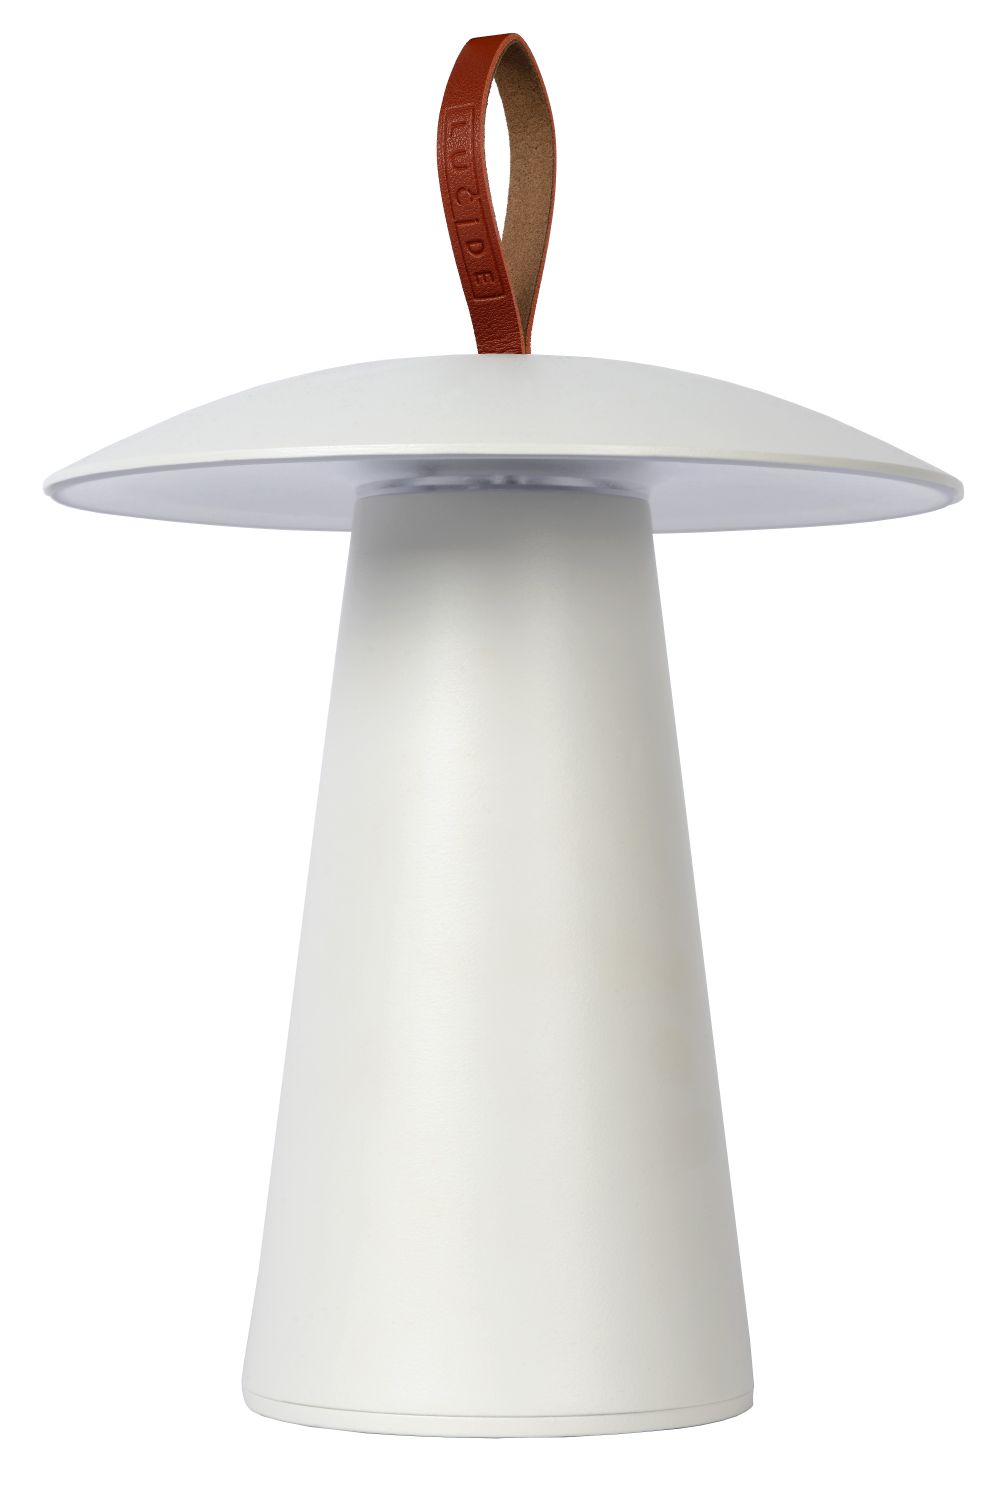 Lucide LA DONNA - Oplaadbare Tafellamp Buiten - Accu/Batterij - Ø 19,7 cm - LED Dimb. - 1x2W 2700K - IP54 - 3 StepDim - Wit